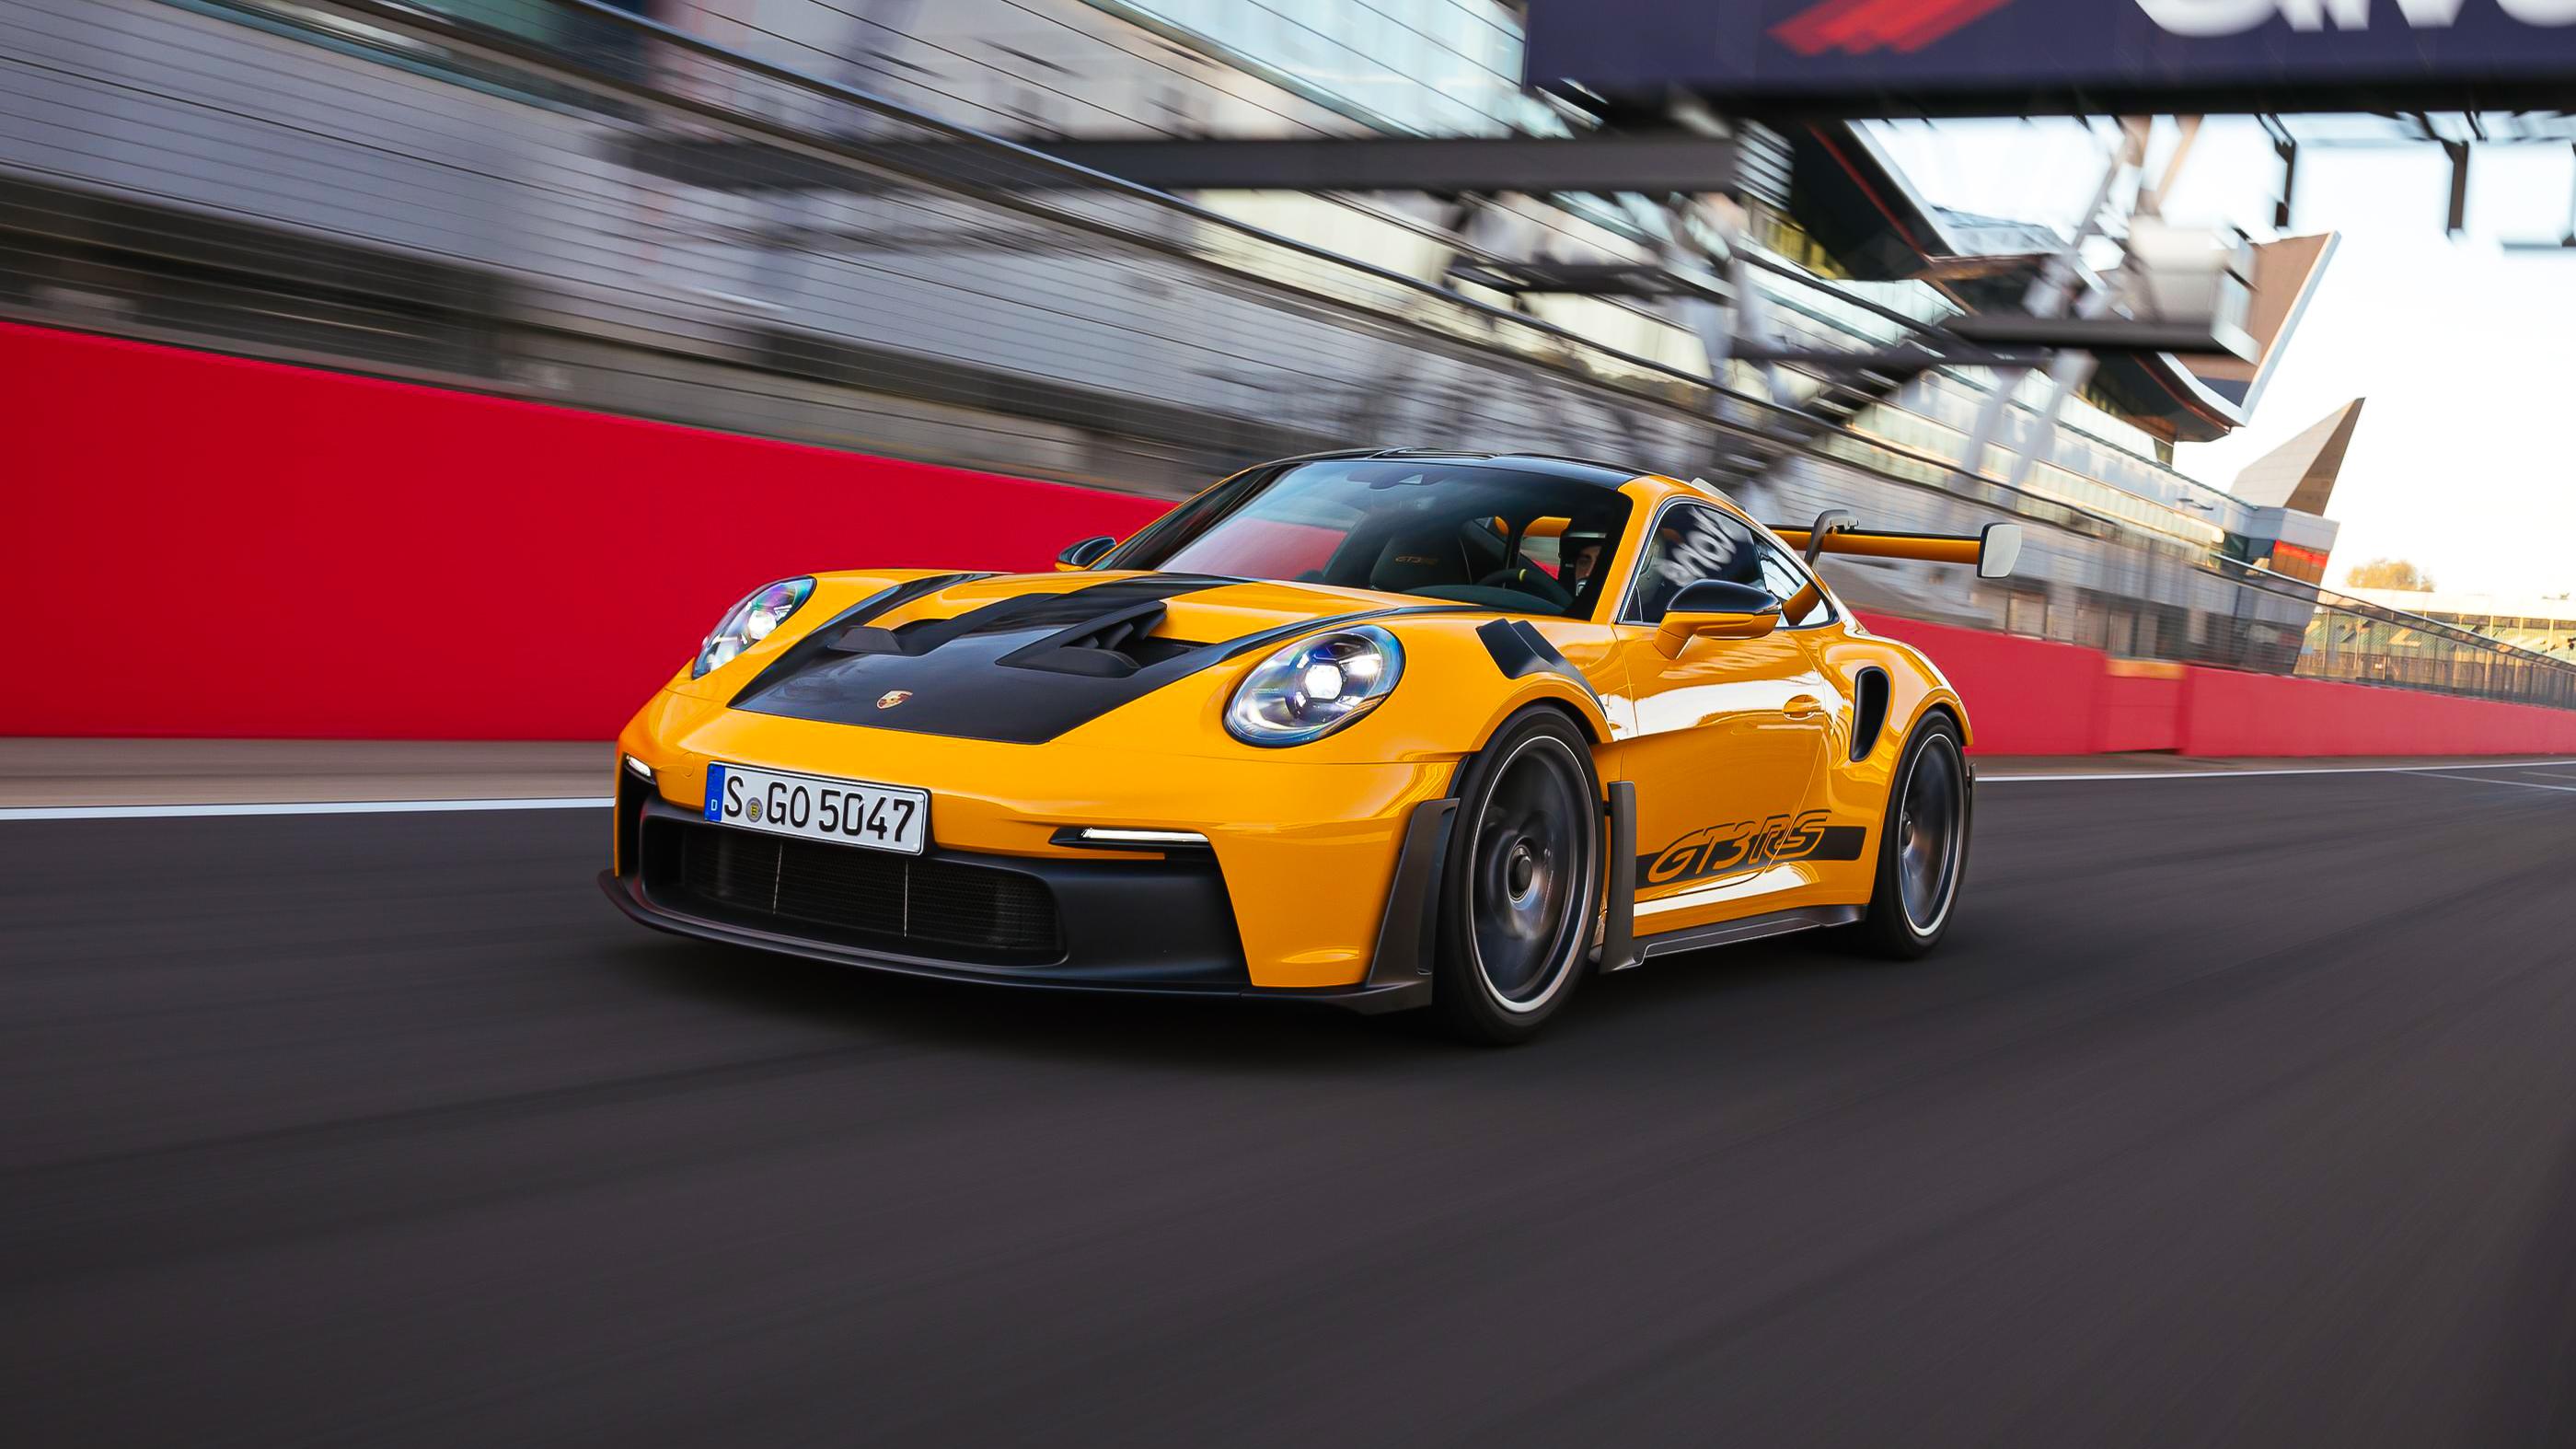 New Porsche 911 GT3 RS Makes Light Work of an Already Great Car